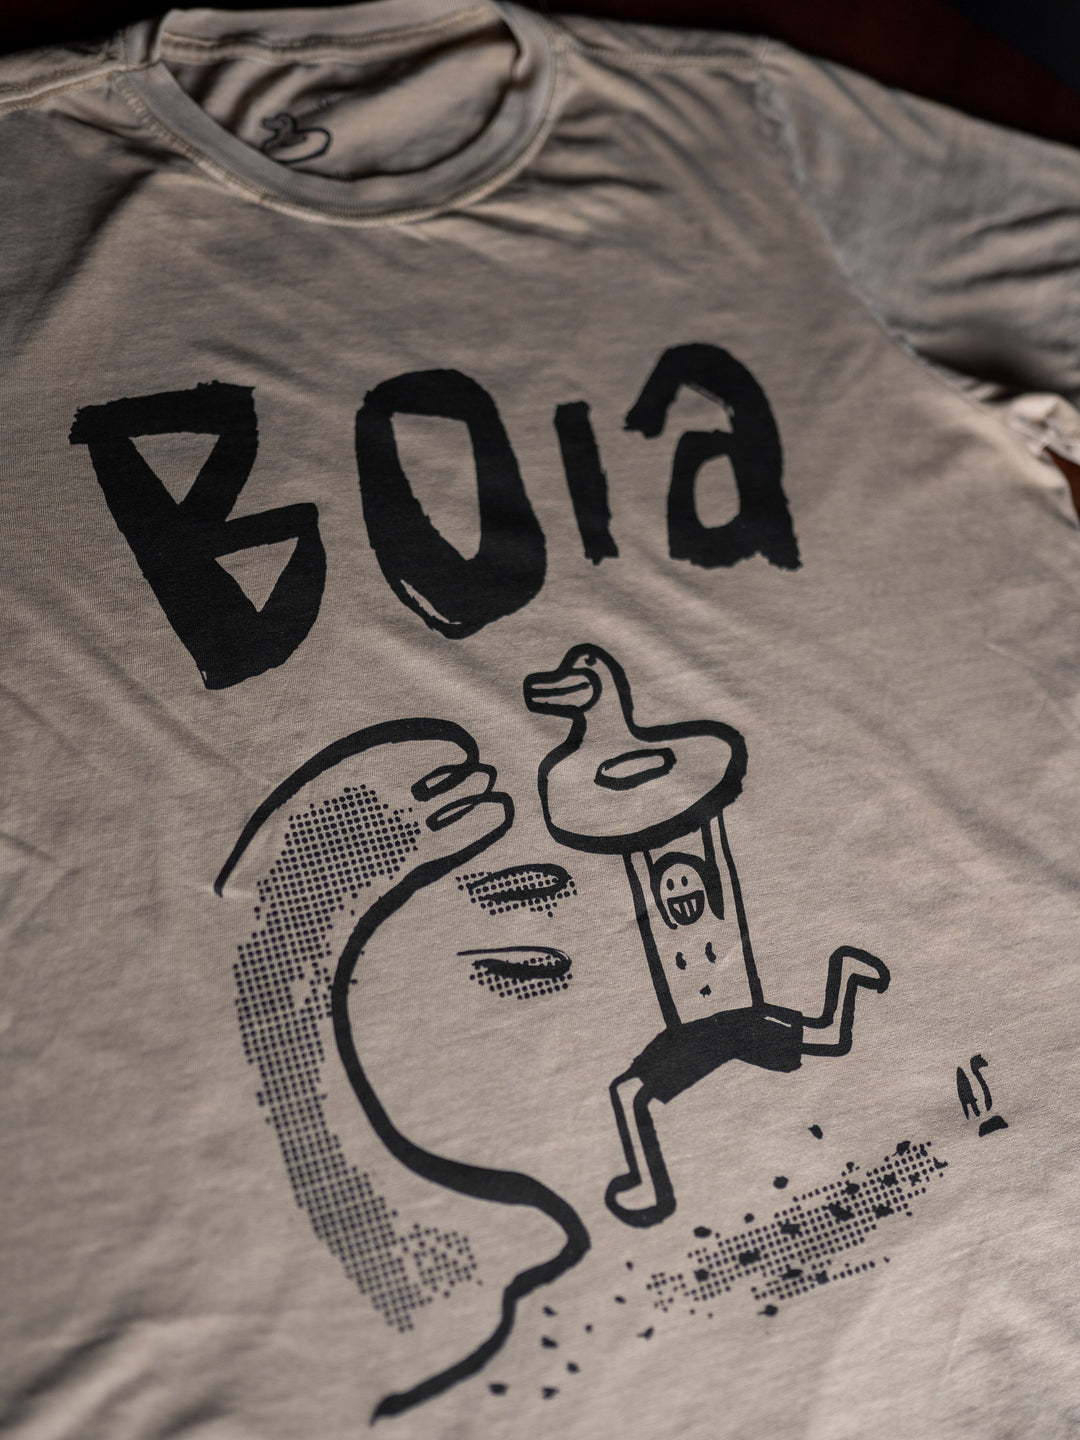 Camiseta Boia 01 Caramelo